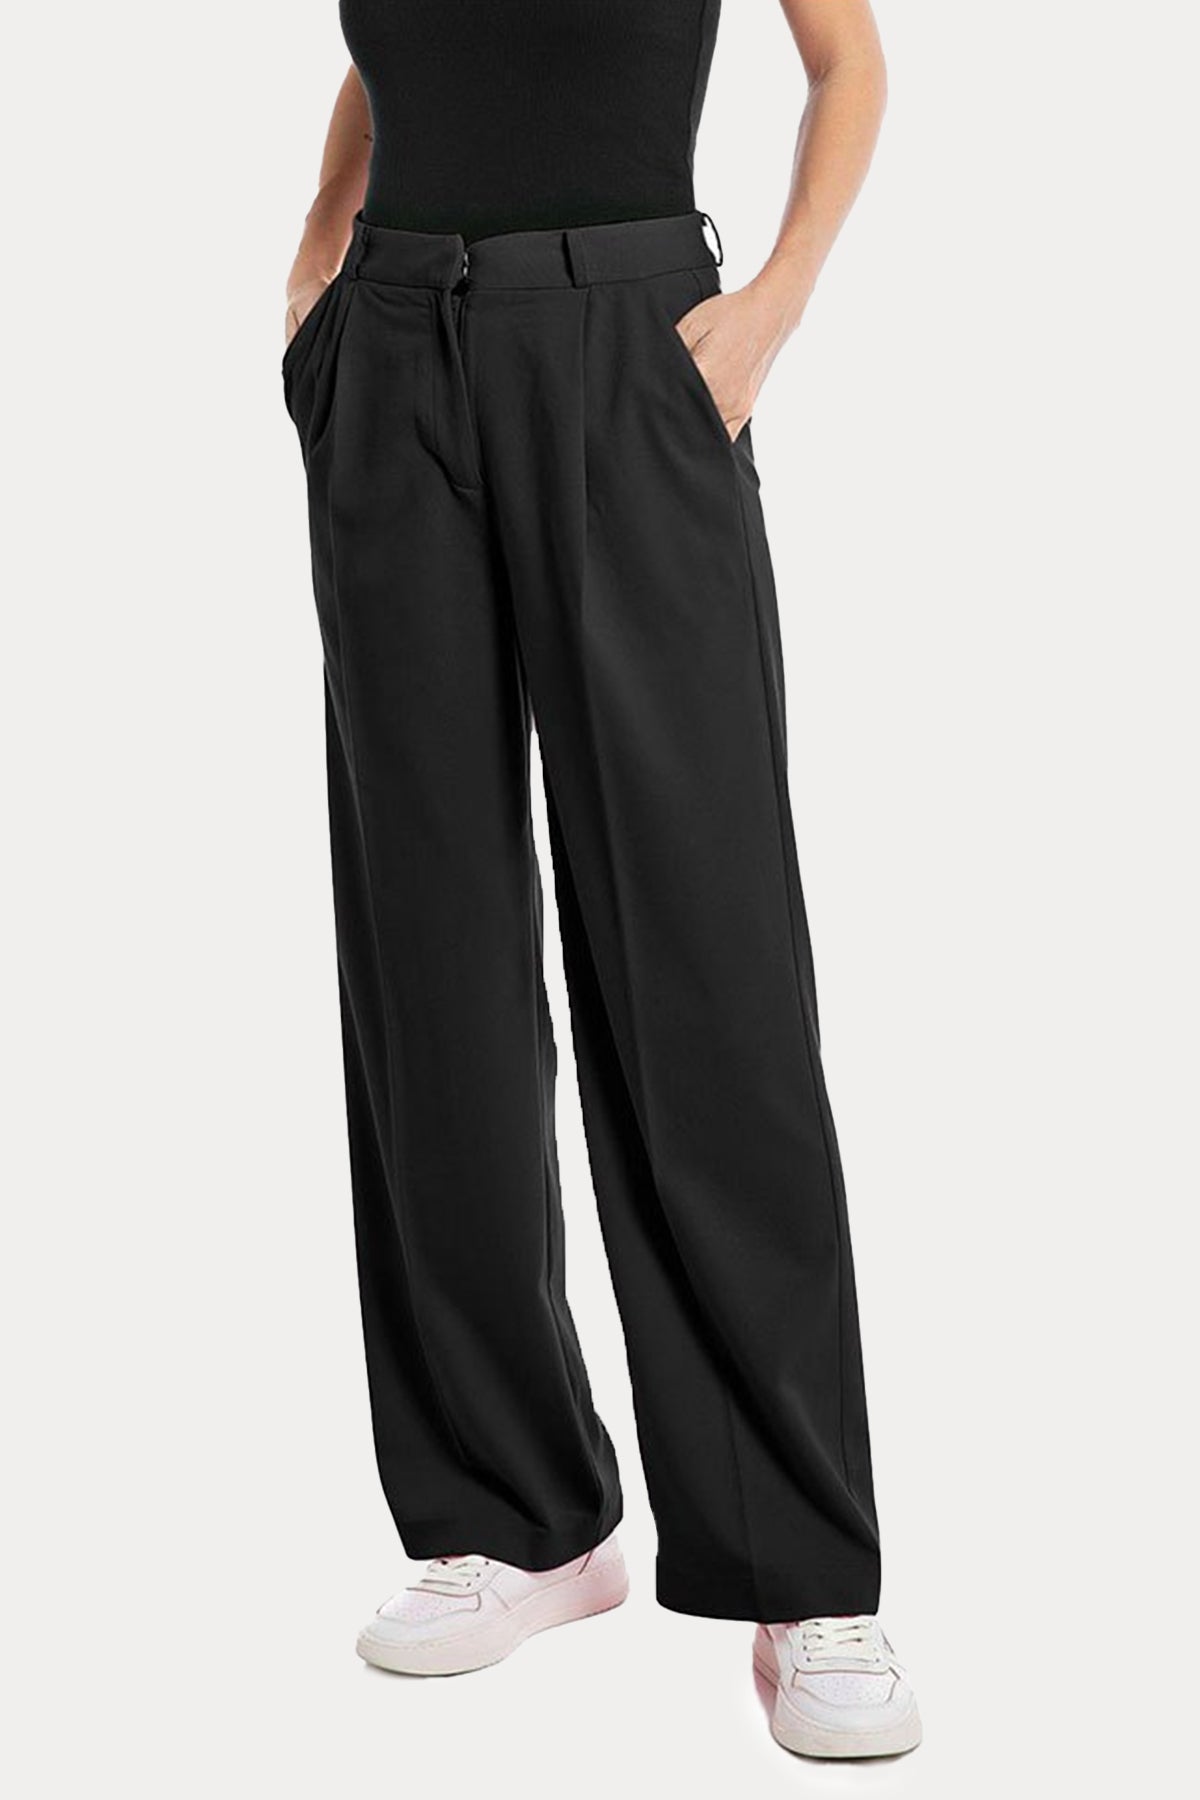 Replay Tek Pile Yandan Cepli Pantolon-Libas Trendy Fashion Store